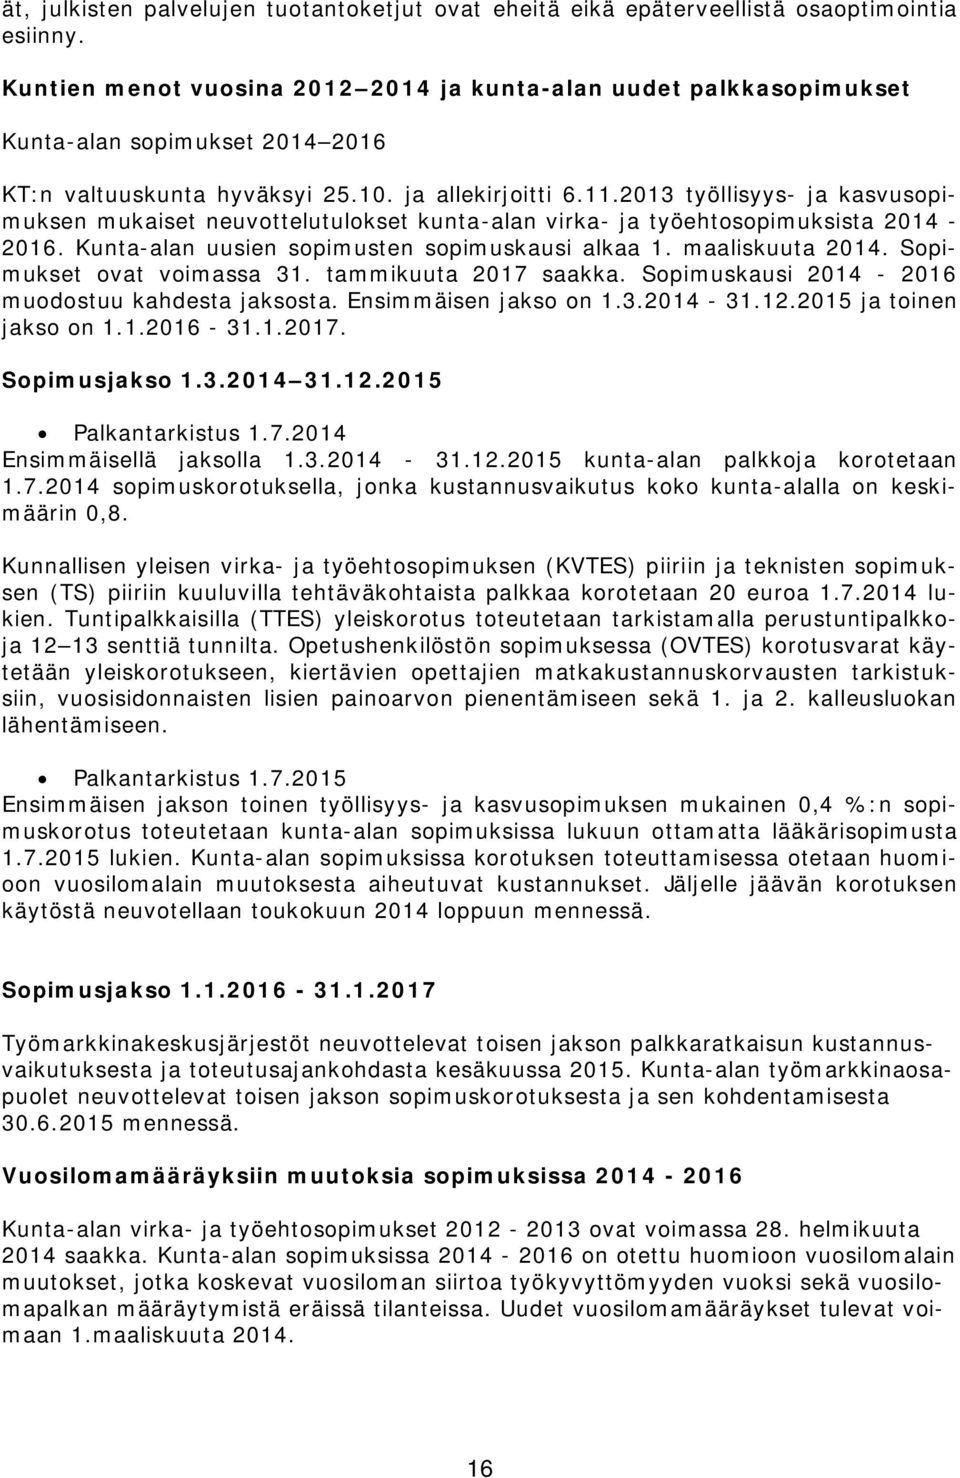 2013 työllisyys- ja kasvusopimuksen mukaiset neuvottelutulokset kunta-alan virka- ja työehtosopimuksista 2014-2016. Kunta-alan uusien sopimusten sopimuskausi alkaa 1. maaliskuuta 2014.